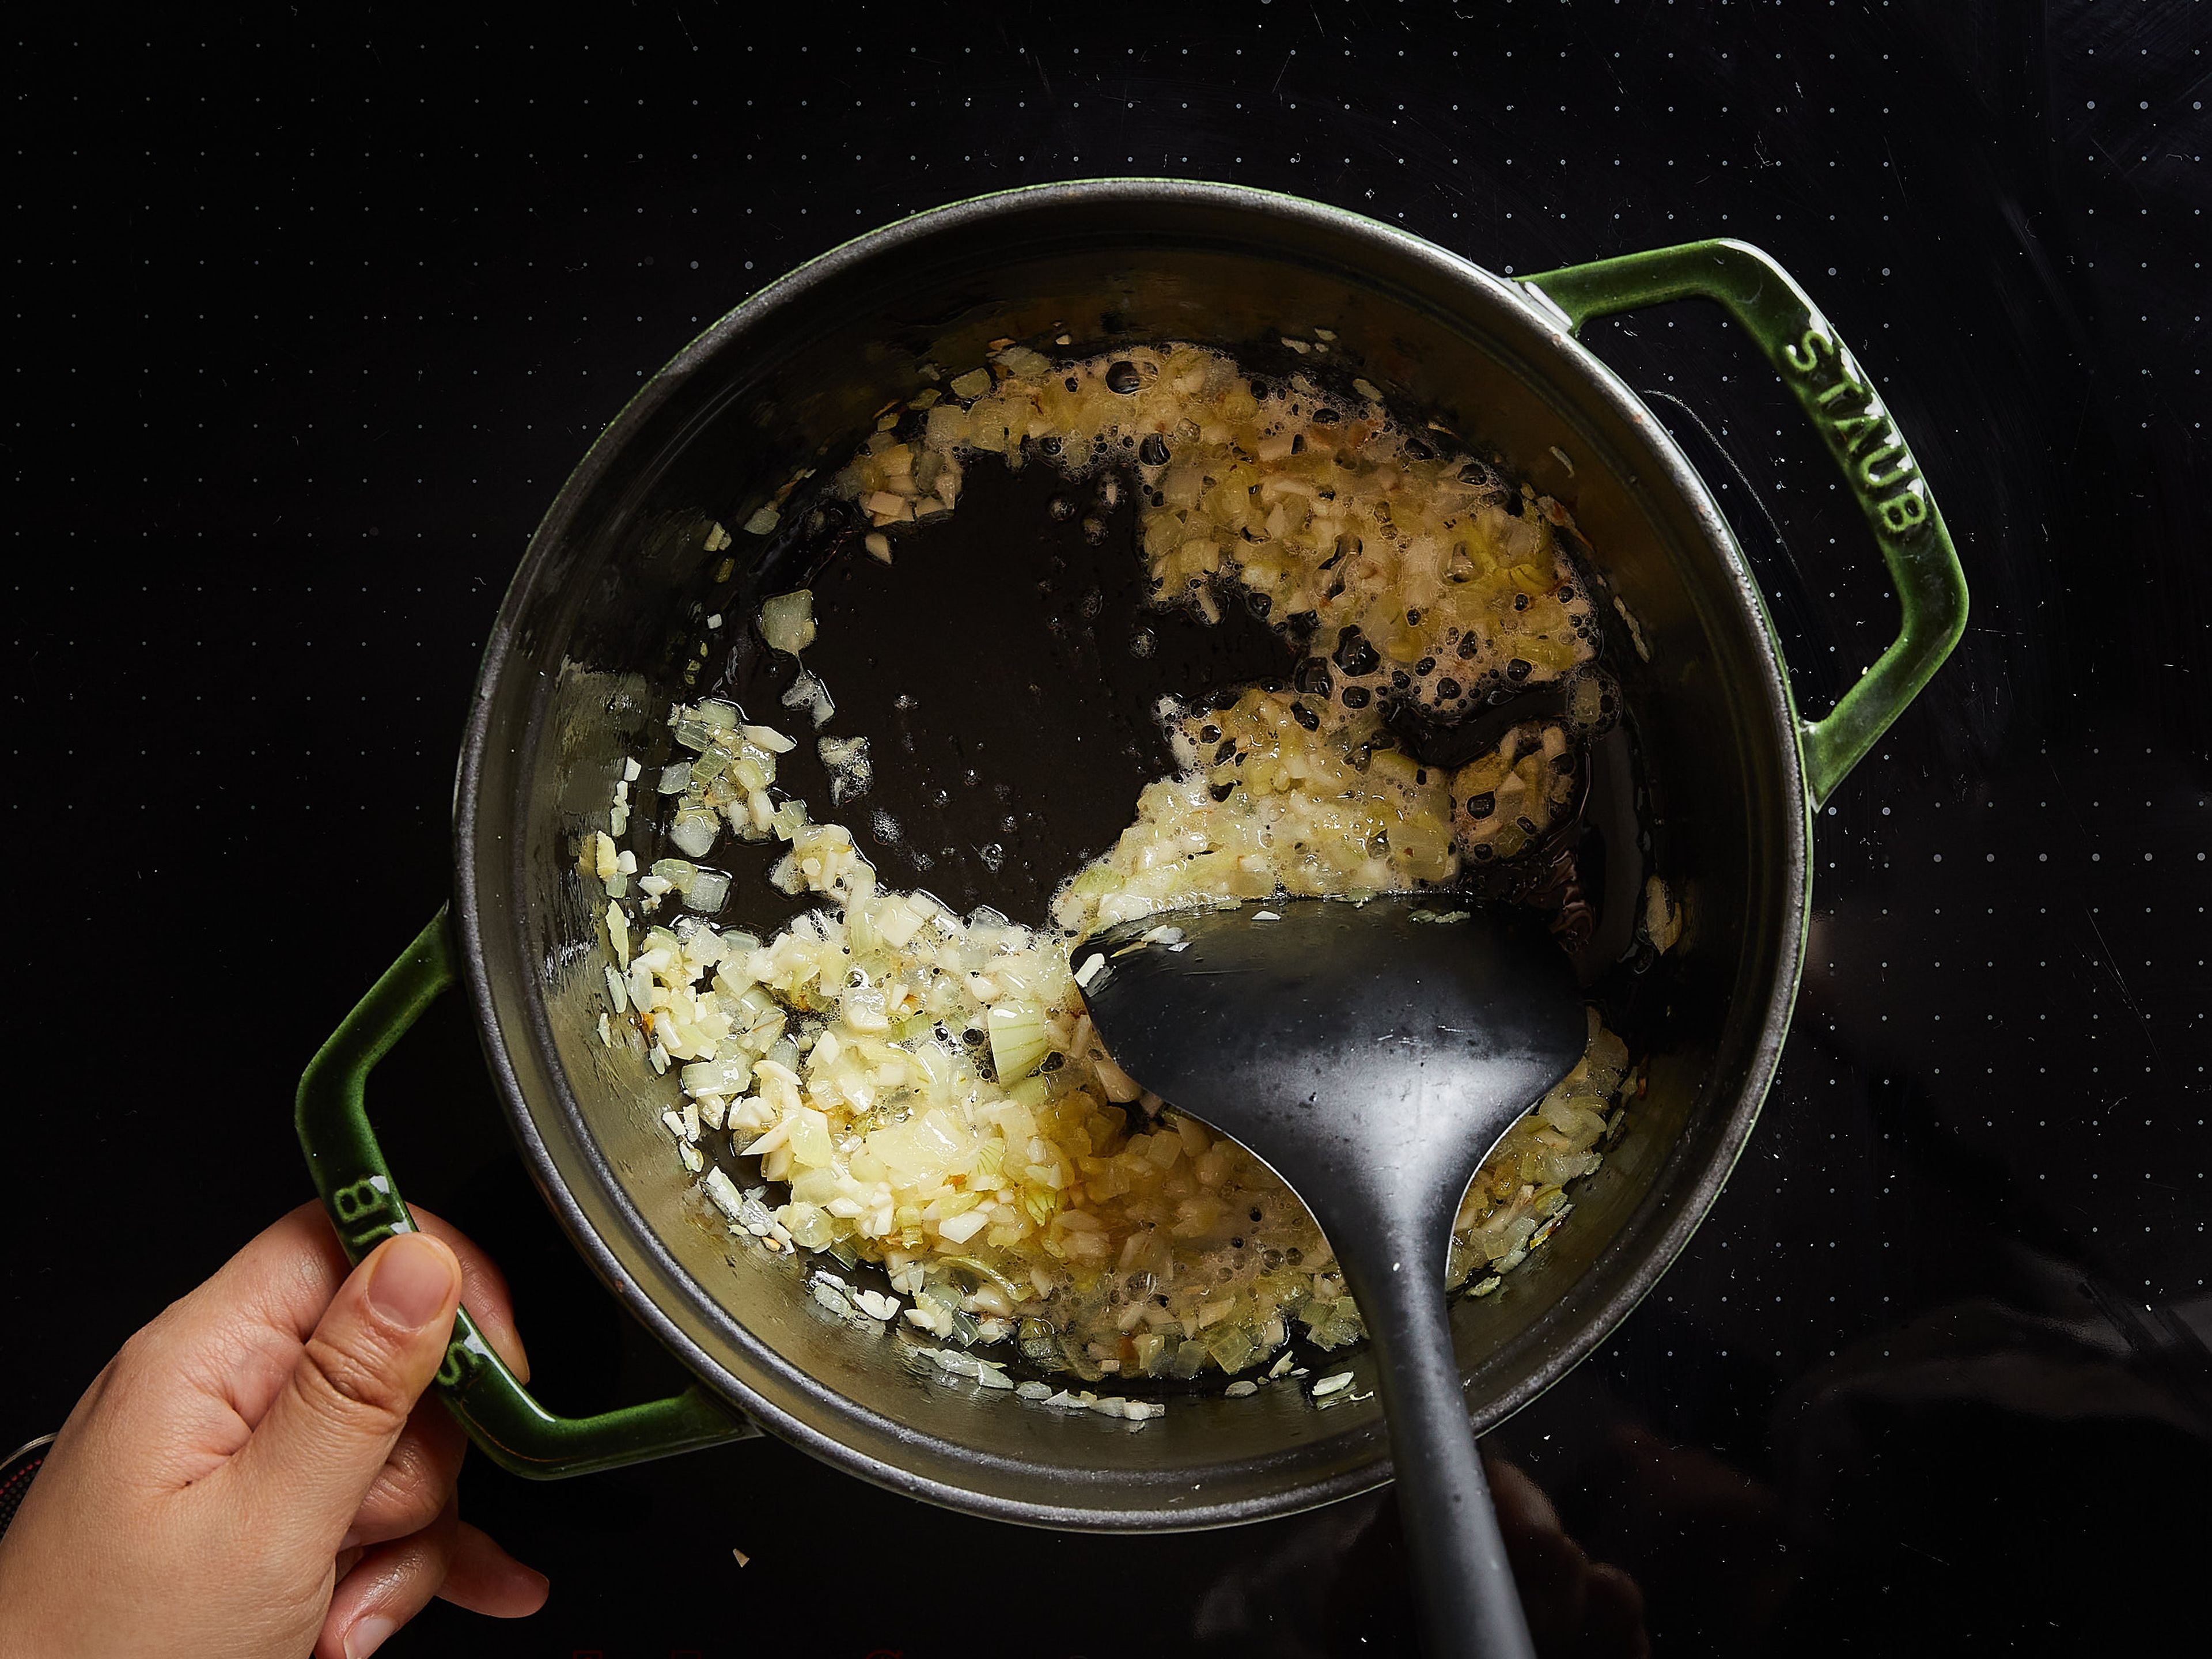 Kokosnussöl in einem Topf bei mittlerer Hitze erhitzen. Zwiebel hinzufügen und unter häufigem Rühren ca. 5 Min. braten, bis sie glasig sind. Knoblauch und Ingwer hinzugeben und kurz anbraten, bis es duftet.